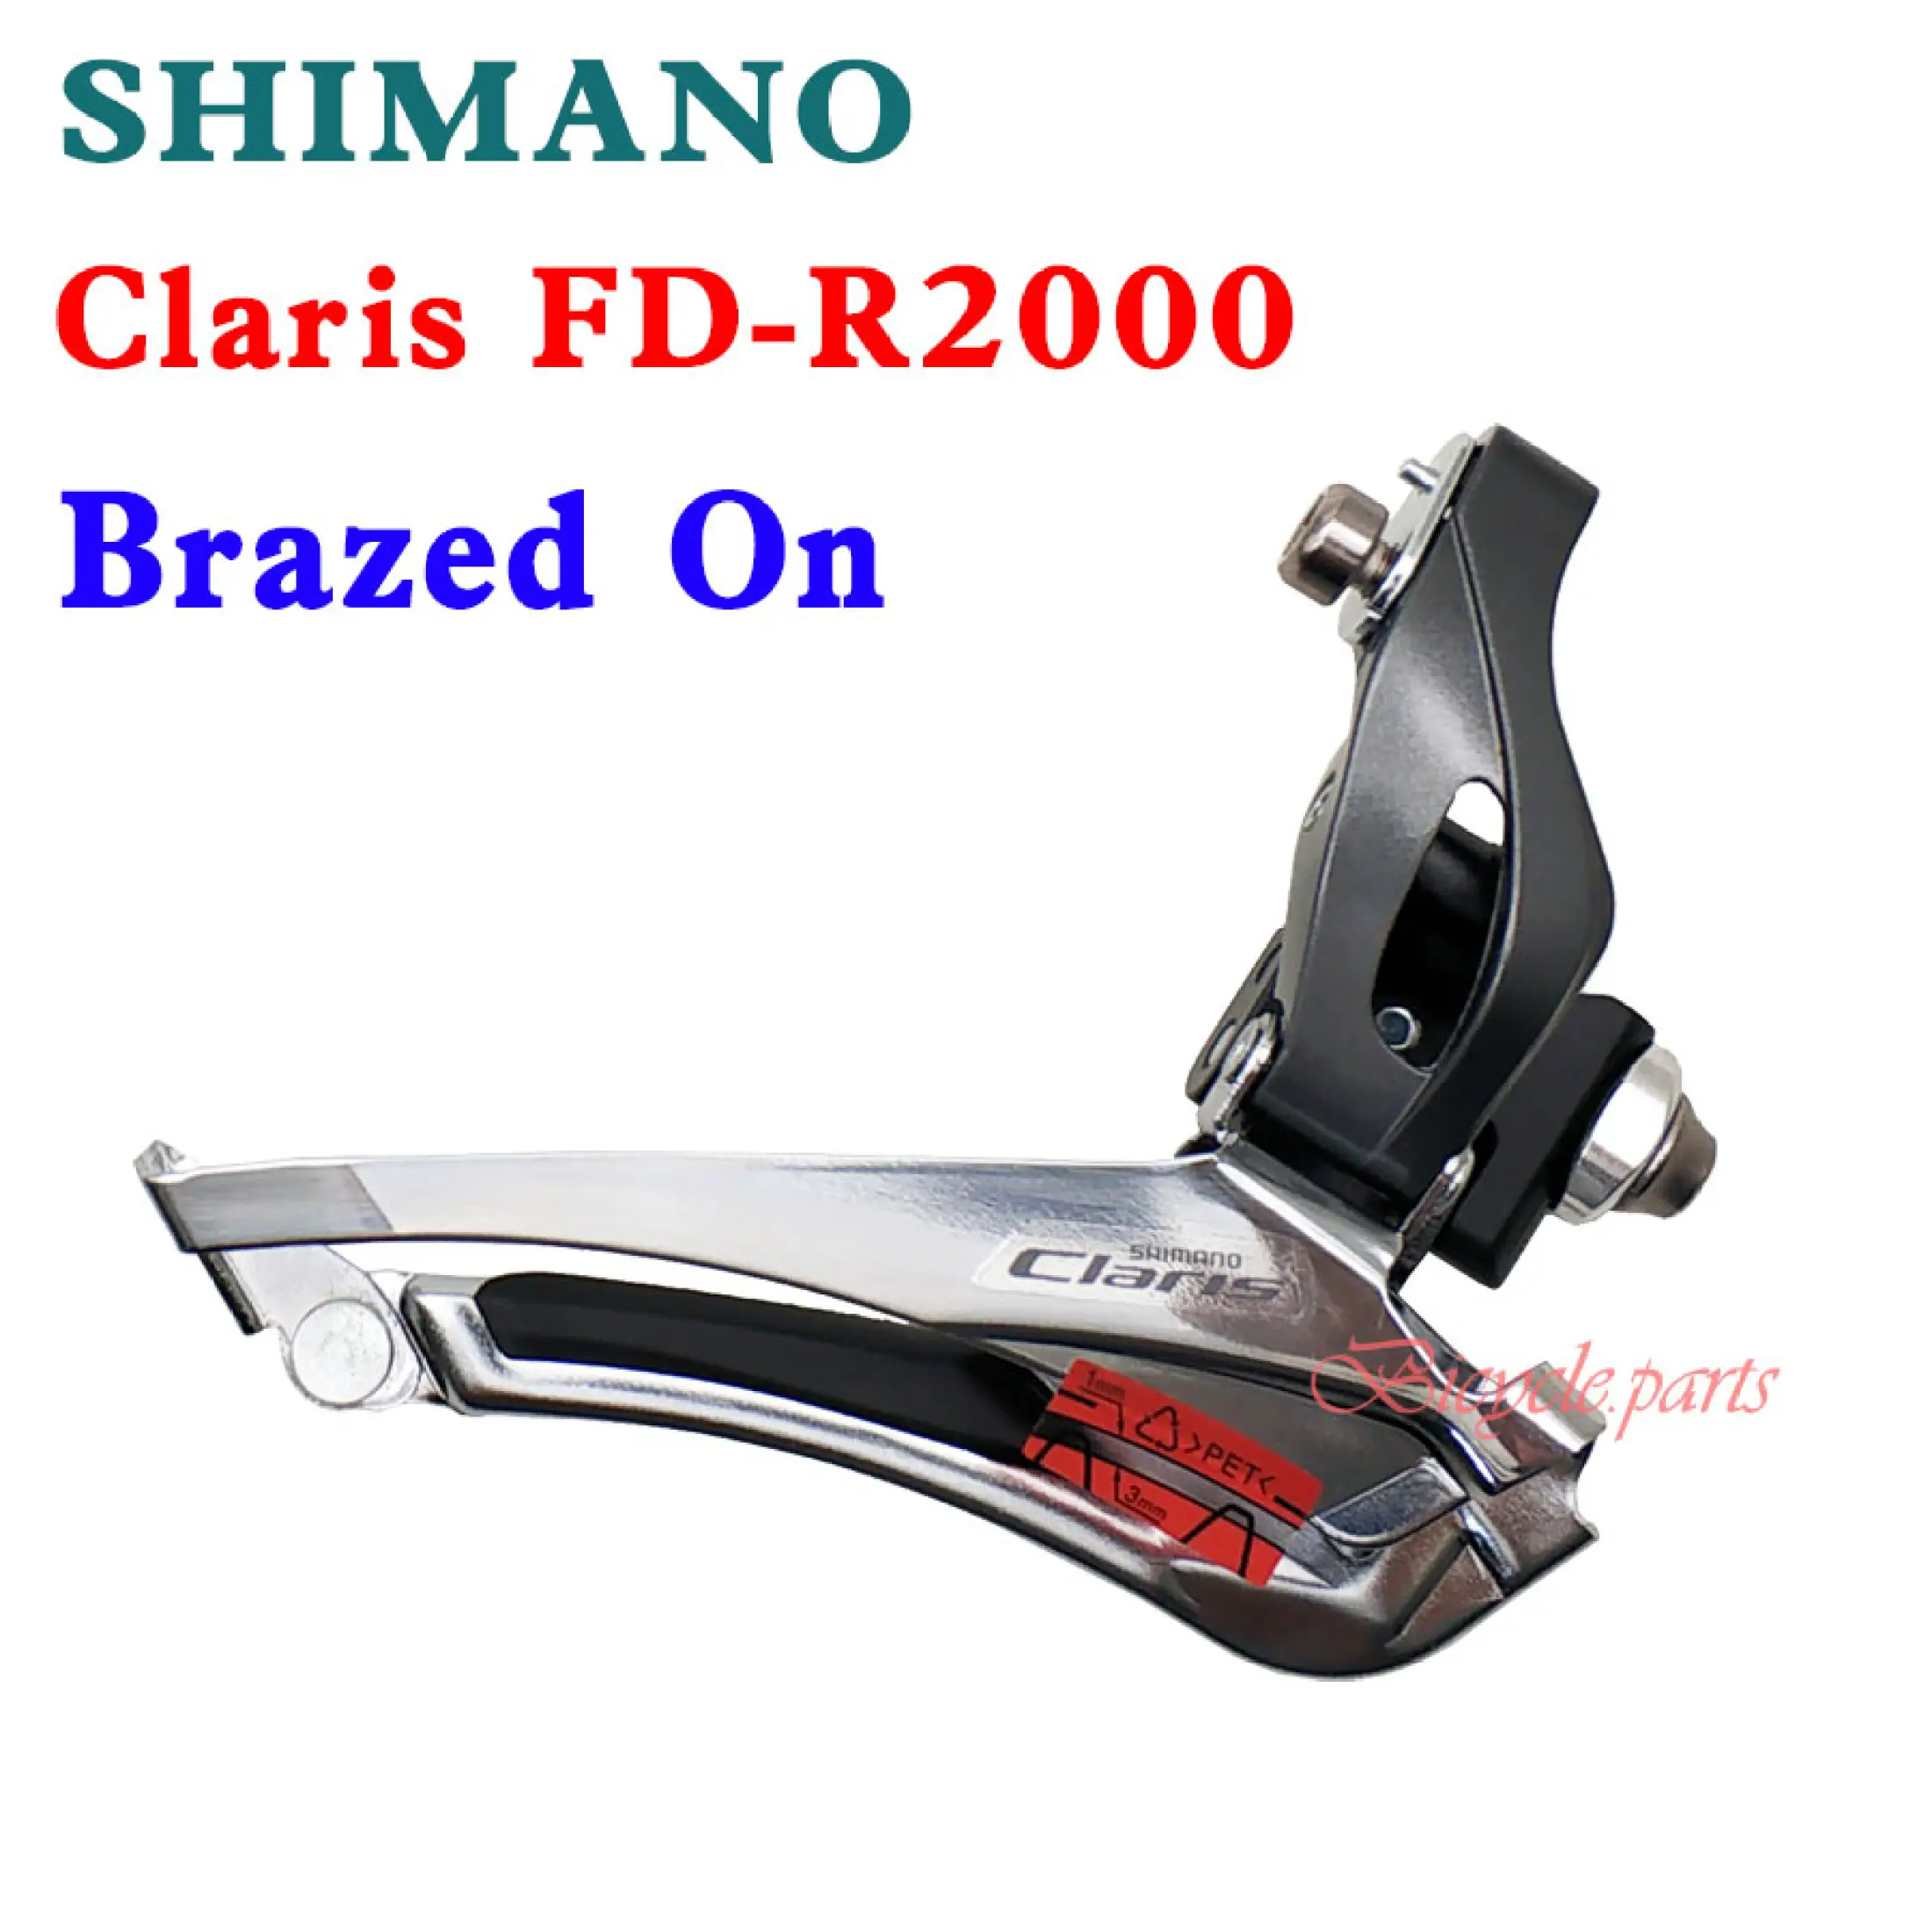 shimano claris r2000 front derailleur